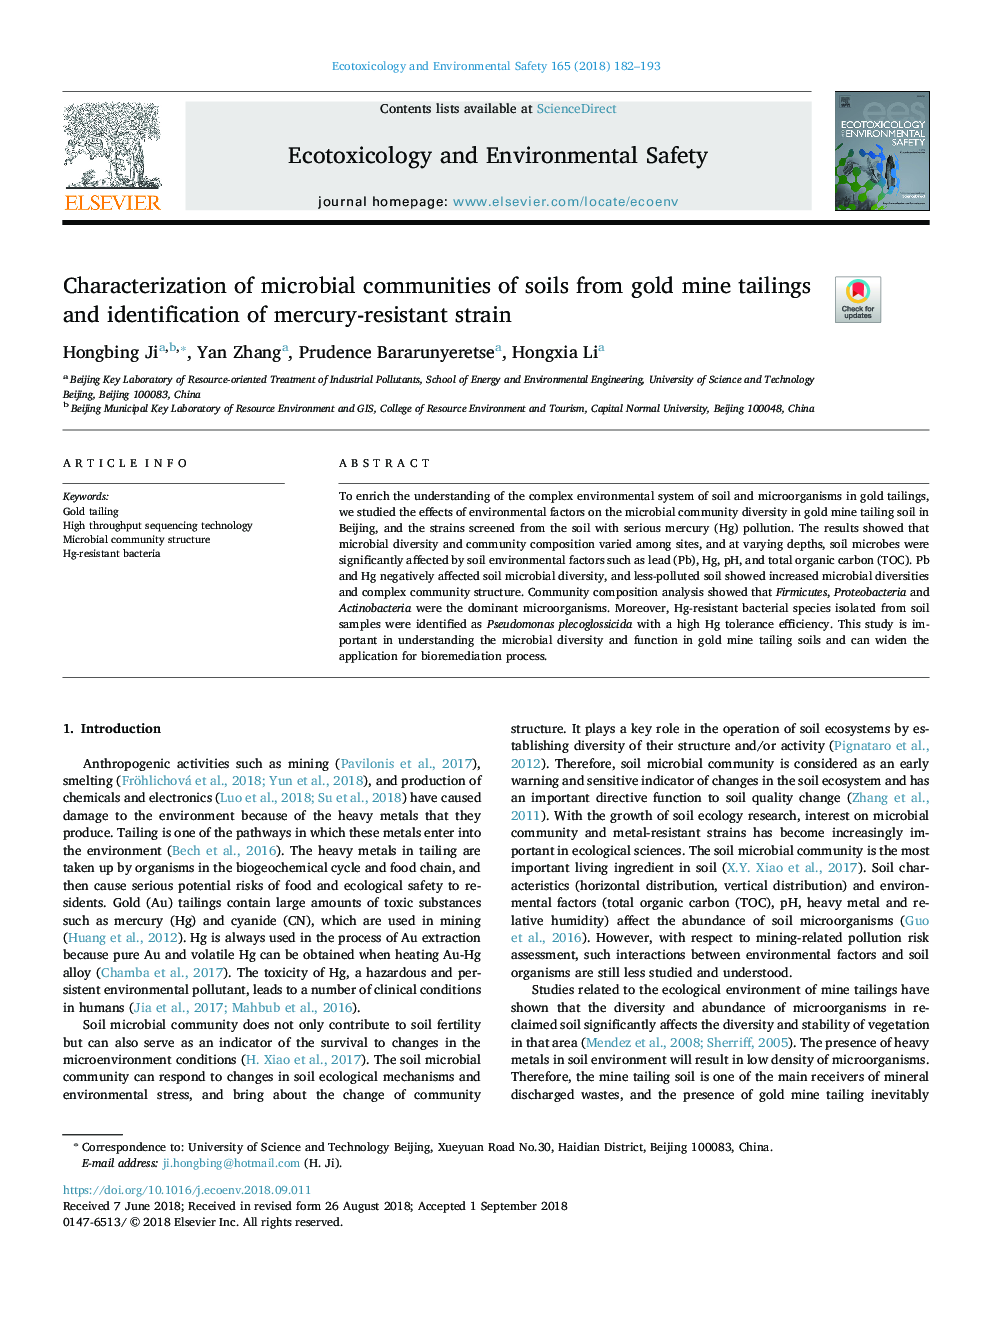 تعیین جوامع میکروبی خاک از بذرهای معدنی طلا و شناسایی سویه مقاوم در برابر جیوه